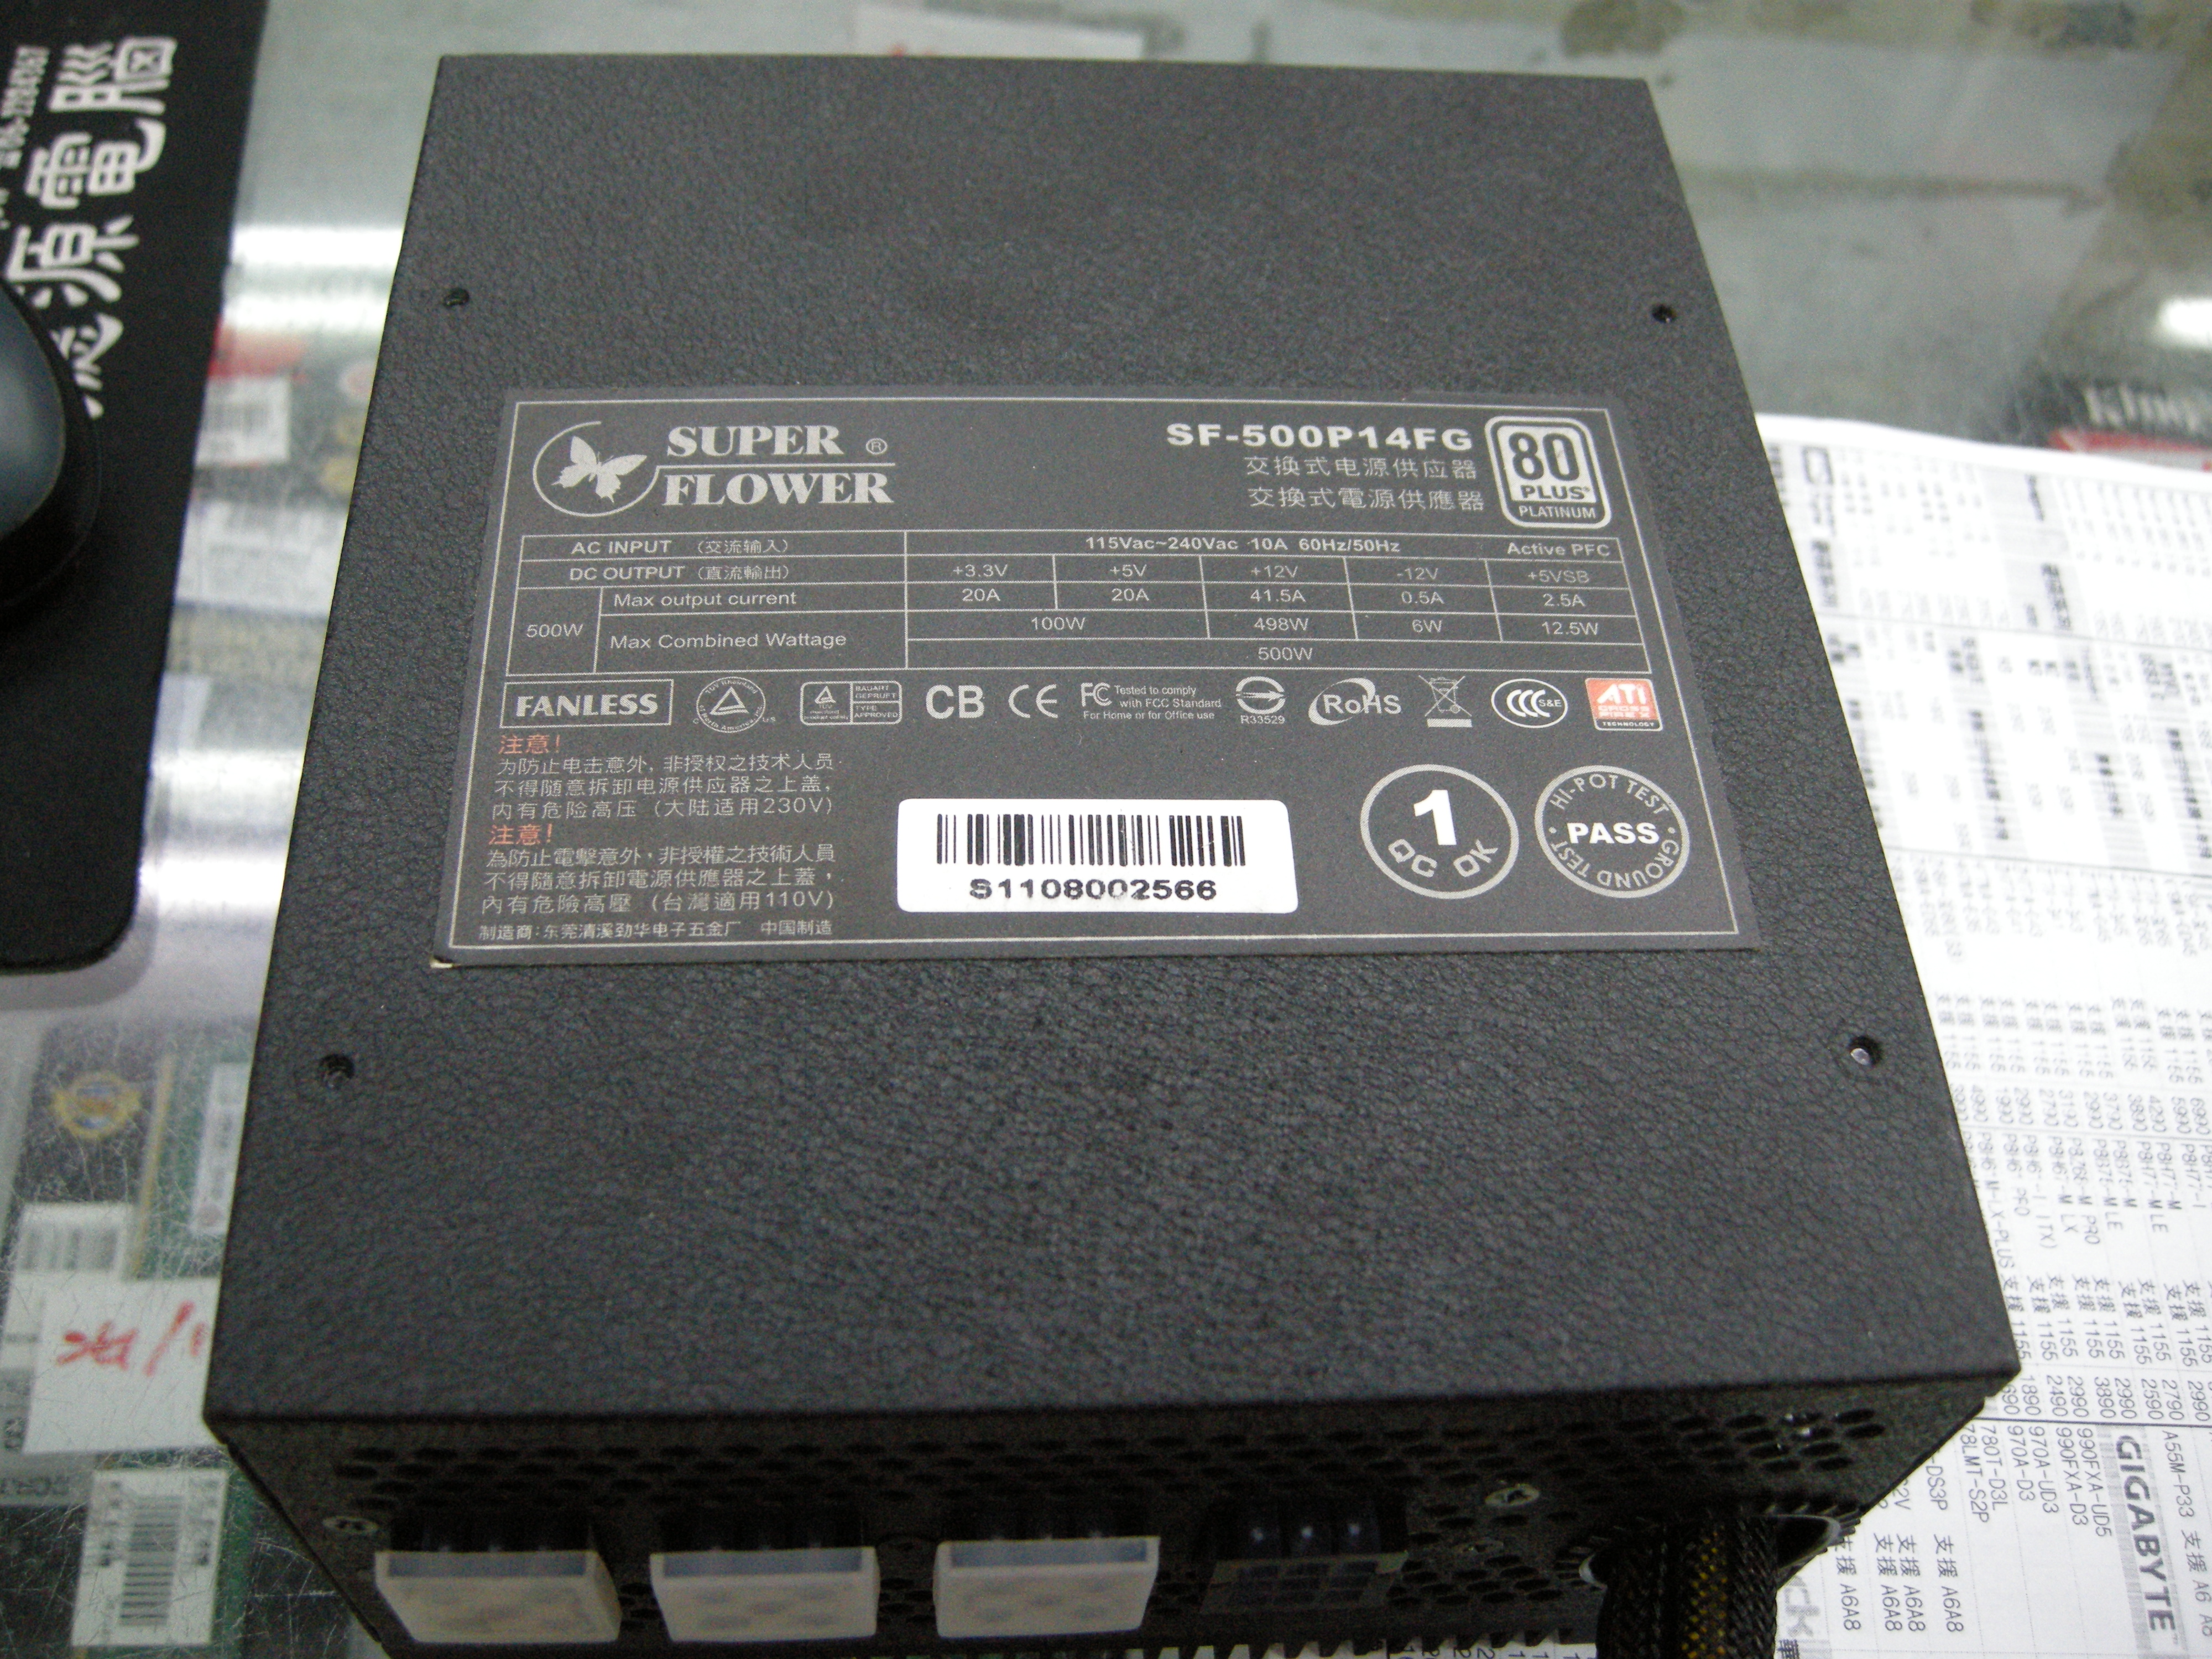 DSCN5221.JPG - 4.41 MB